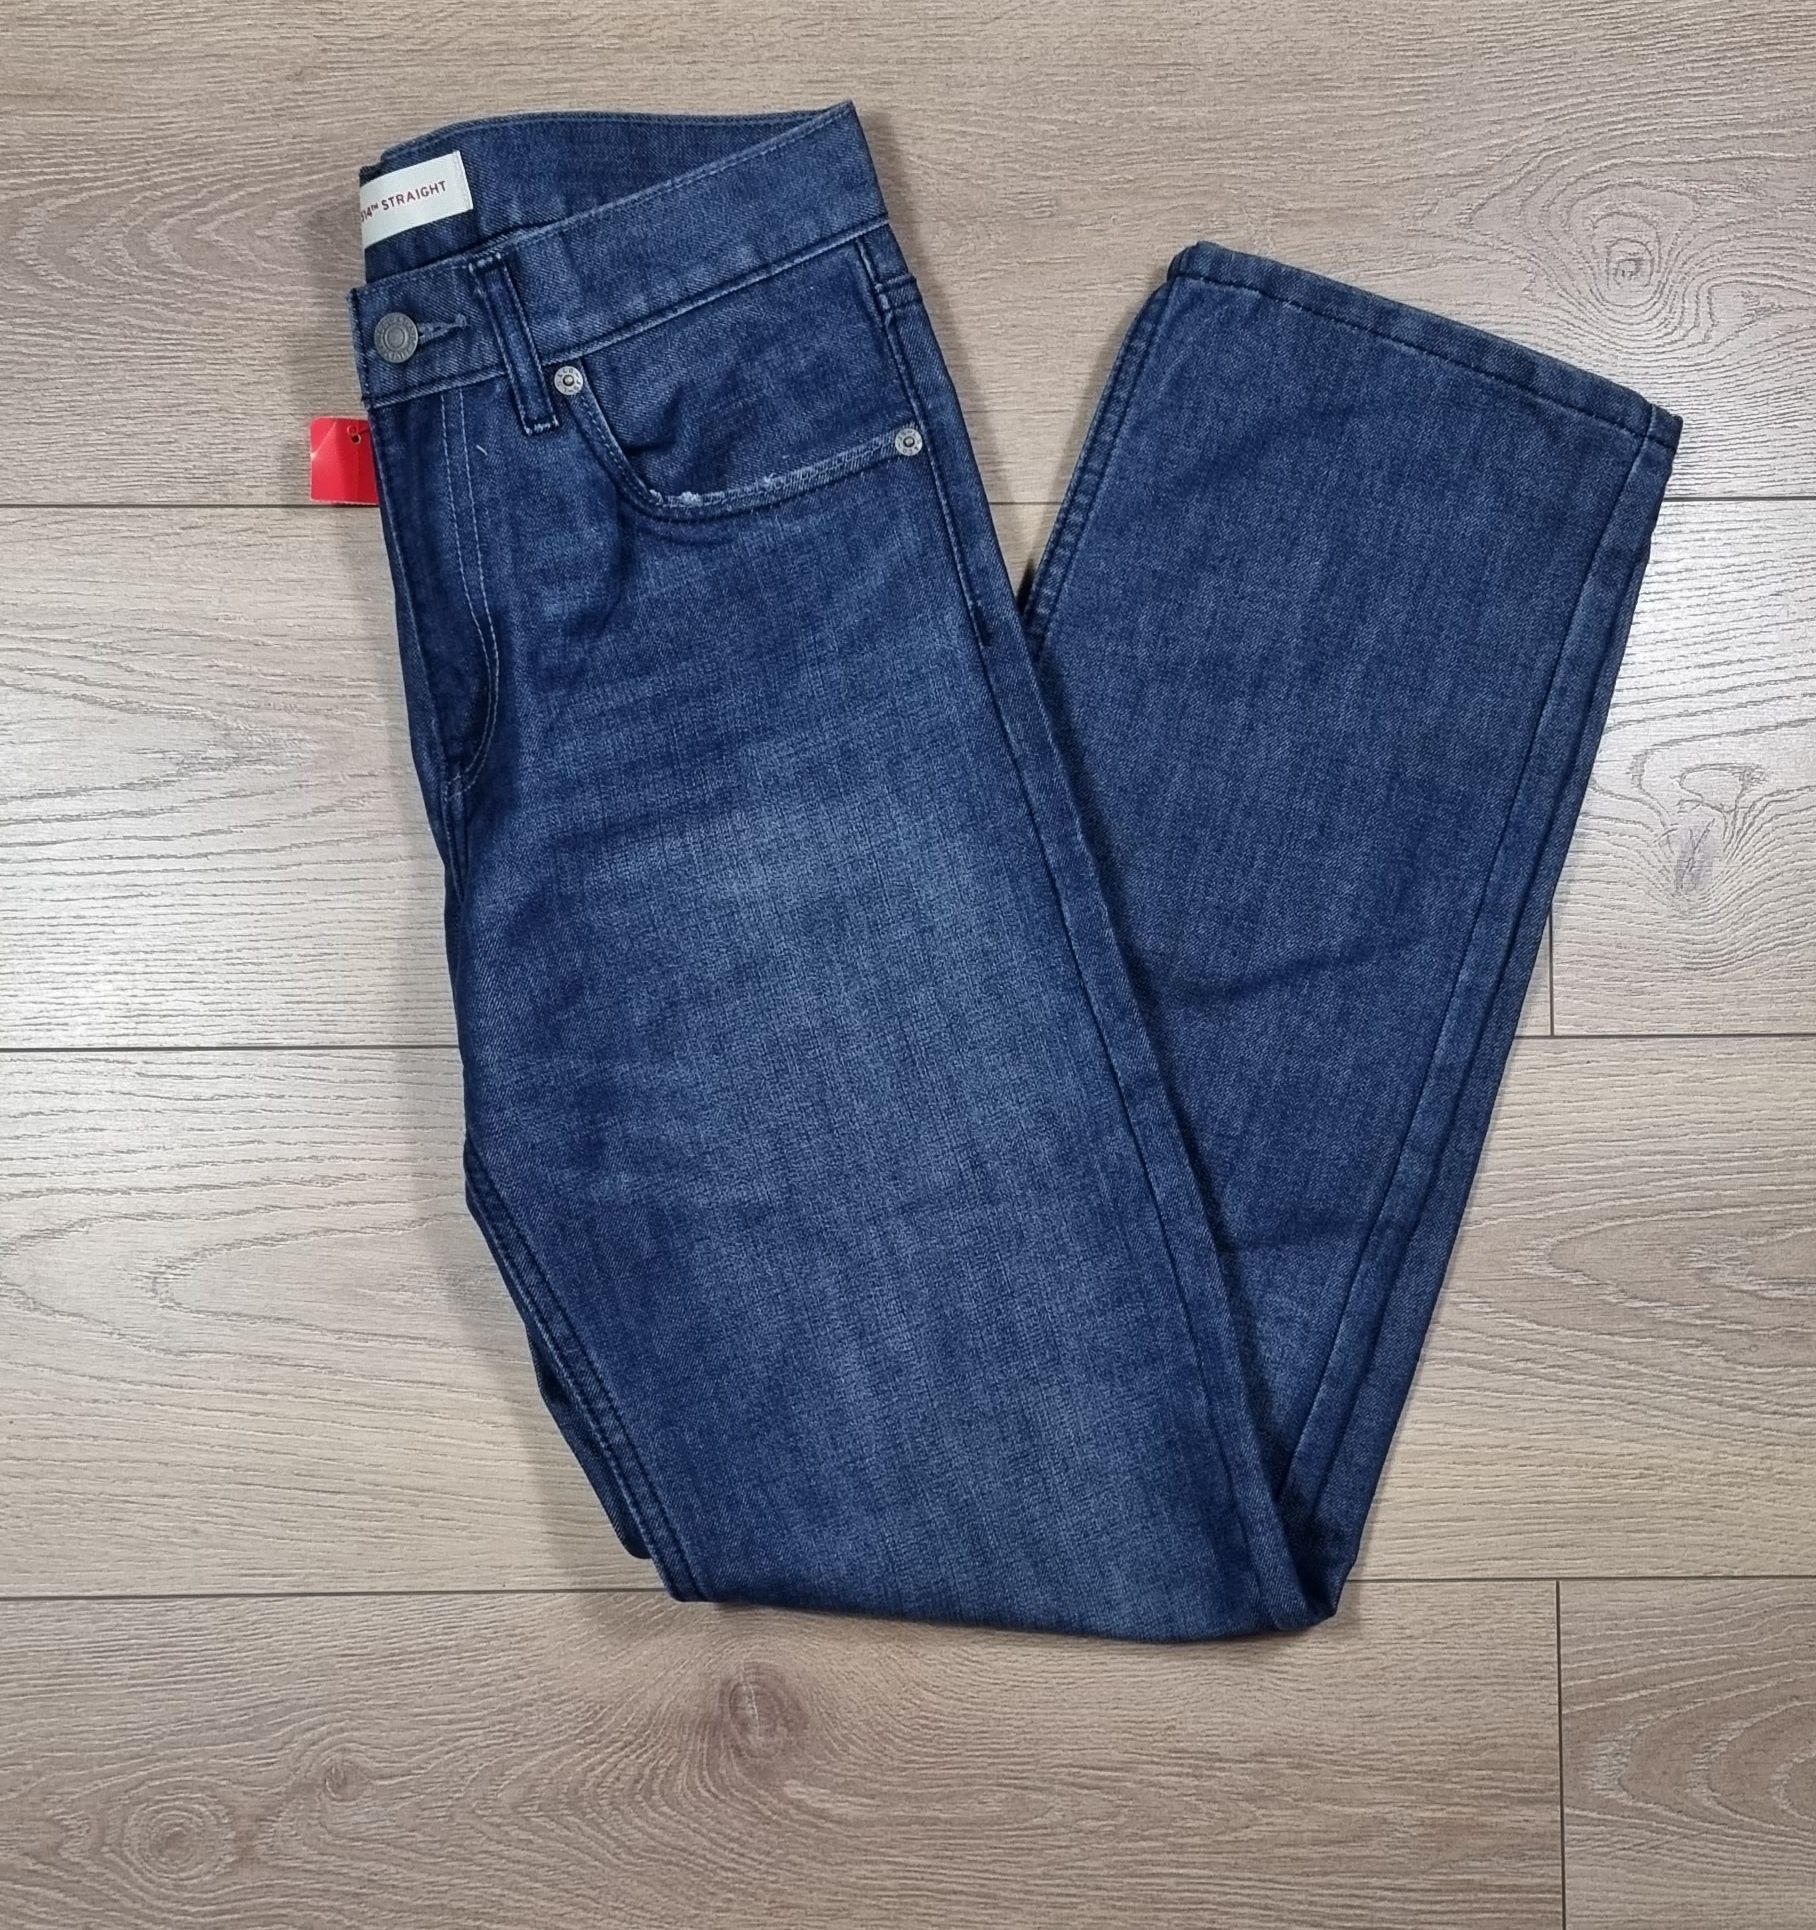 Spodnie jeansowe męskie Levi's Strauss 514, Levis dżinsy, straight